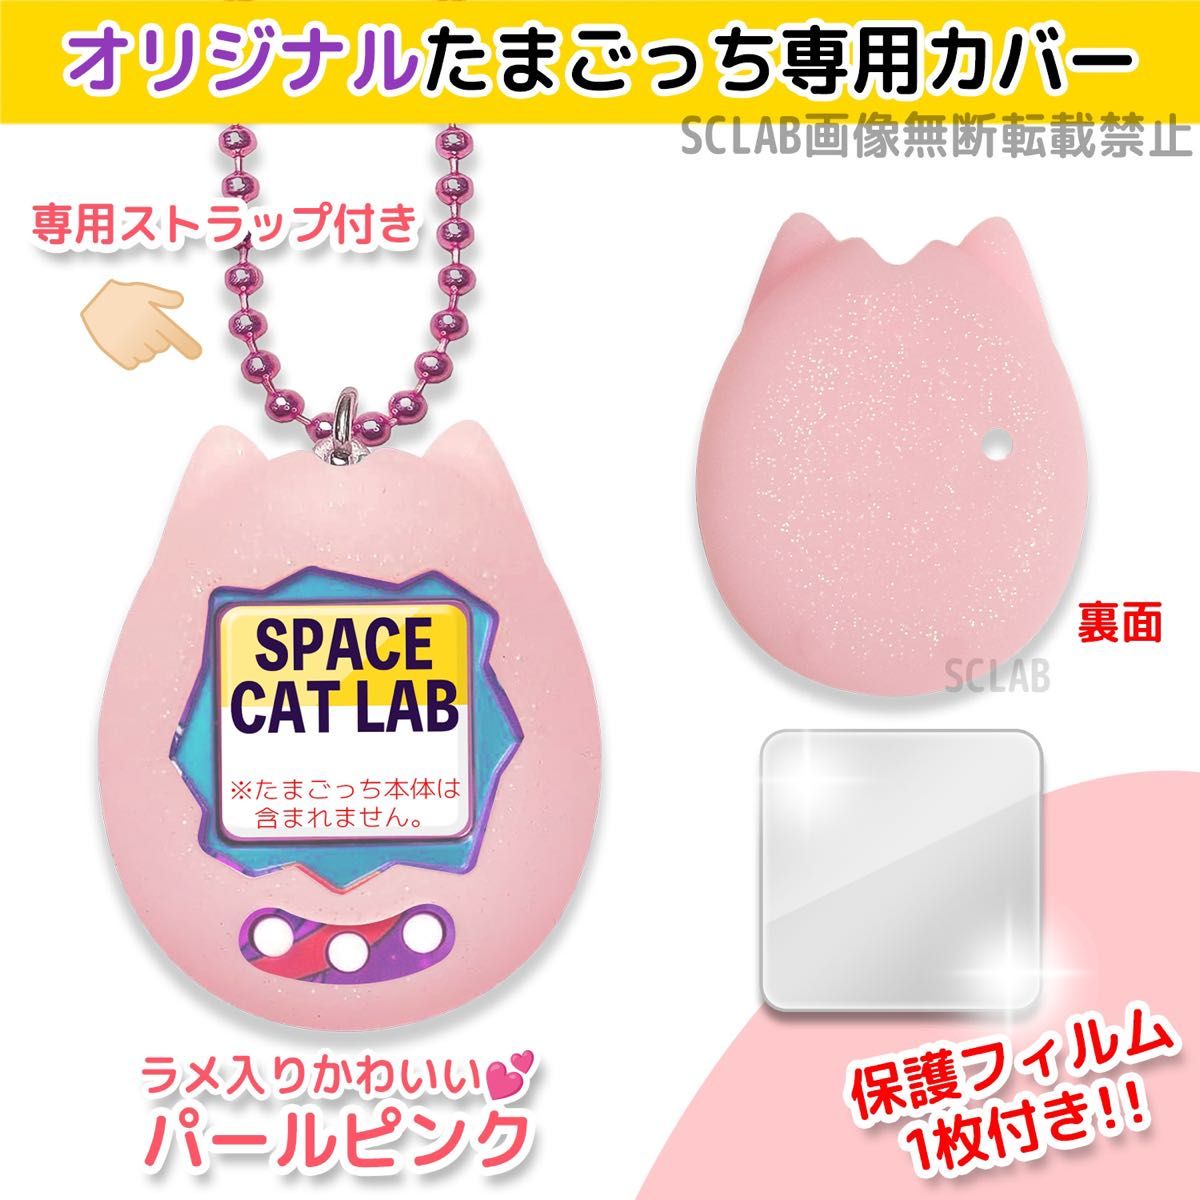 【値引き有】オリジナル たまごっち シリコン カバー ケース ピンク